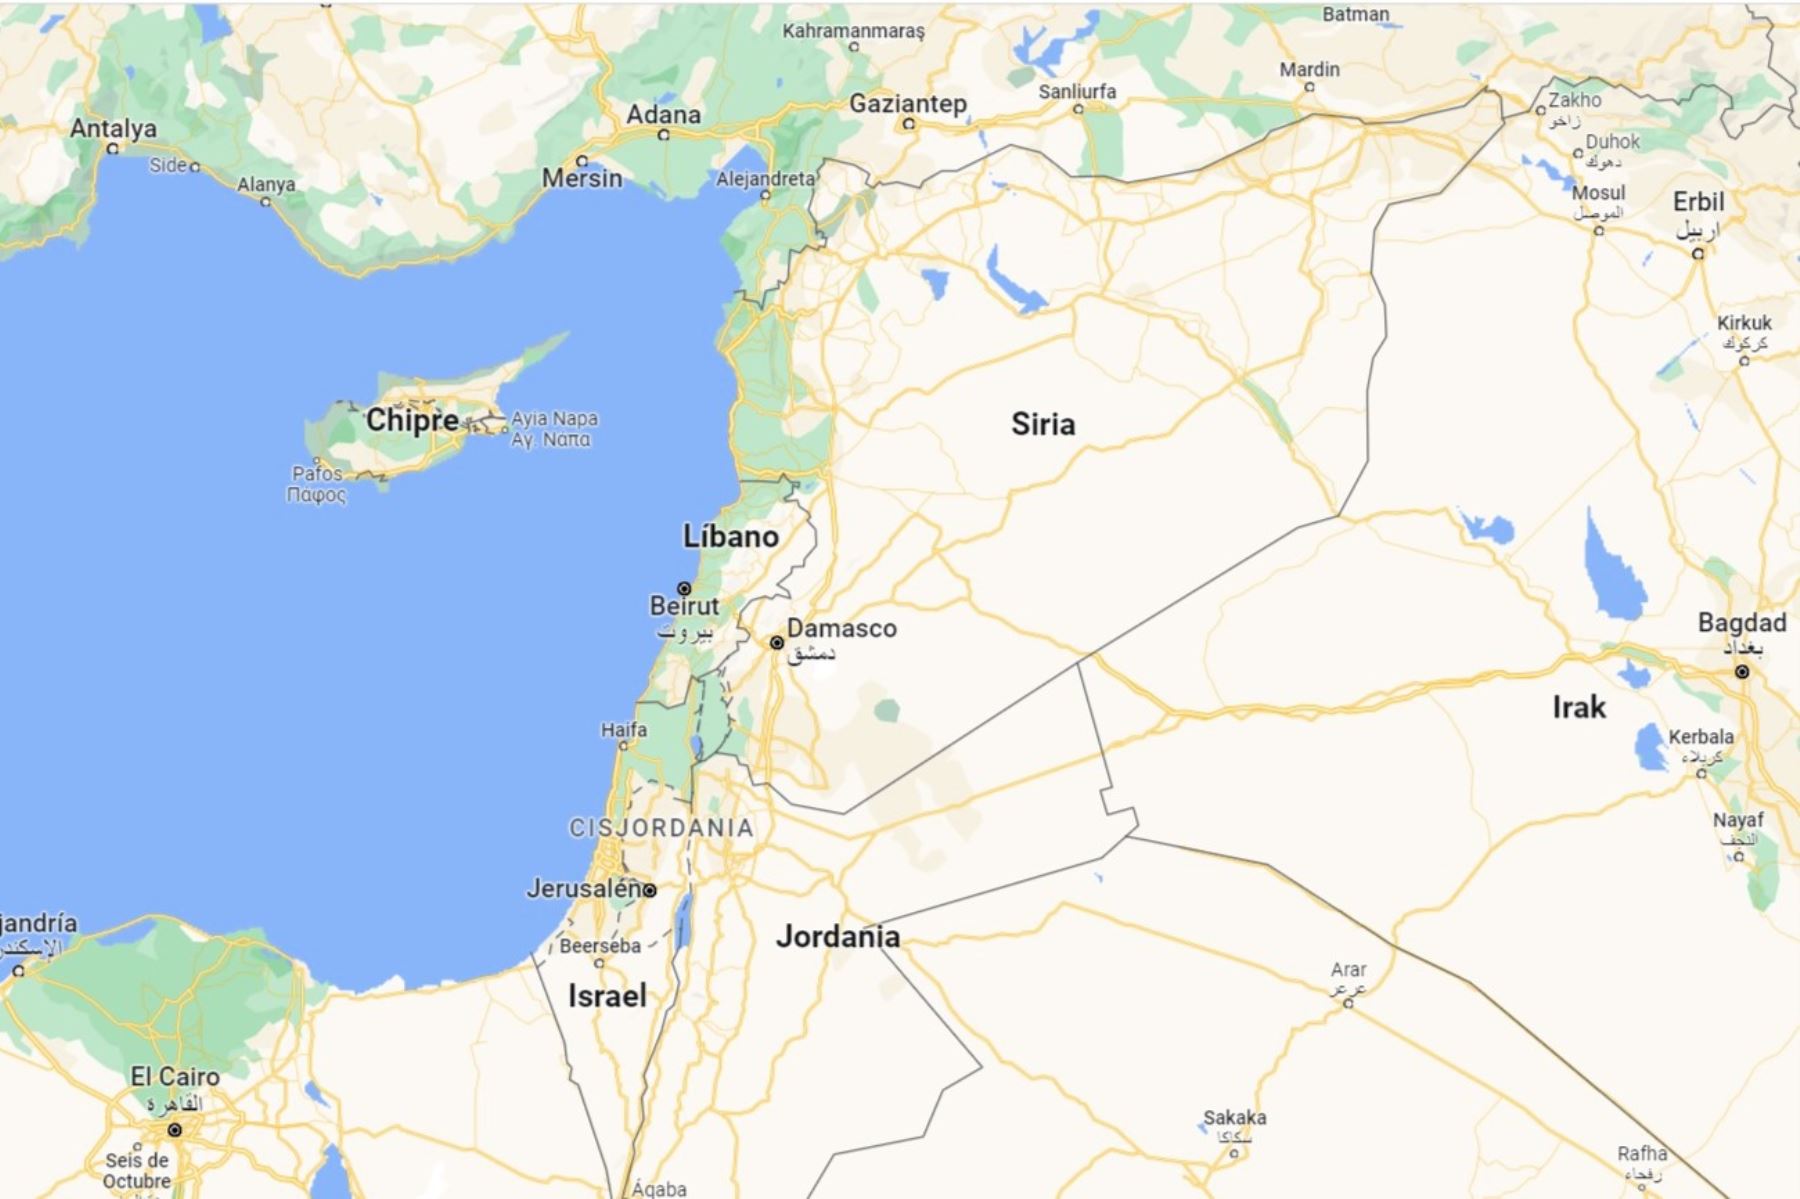 Mapa de algunos países de Medio Oriente. Imagen: Google Maps.